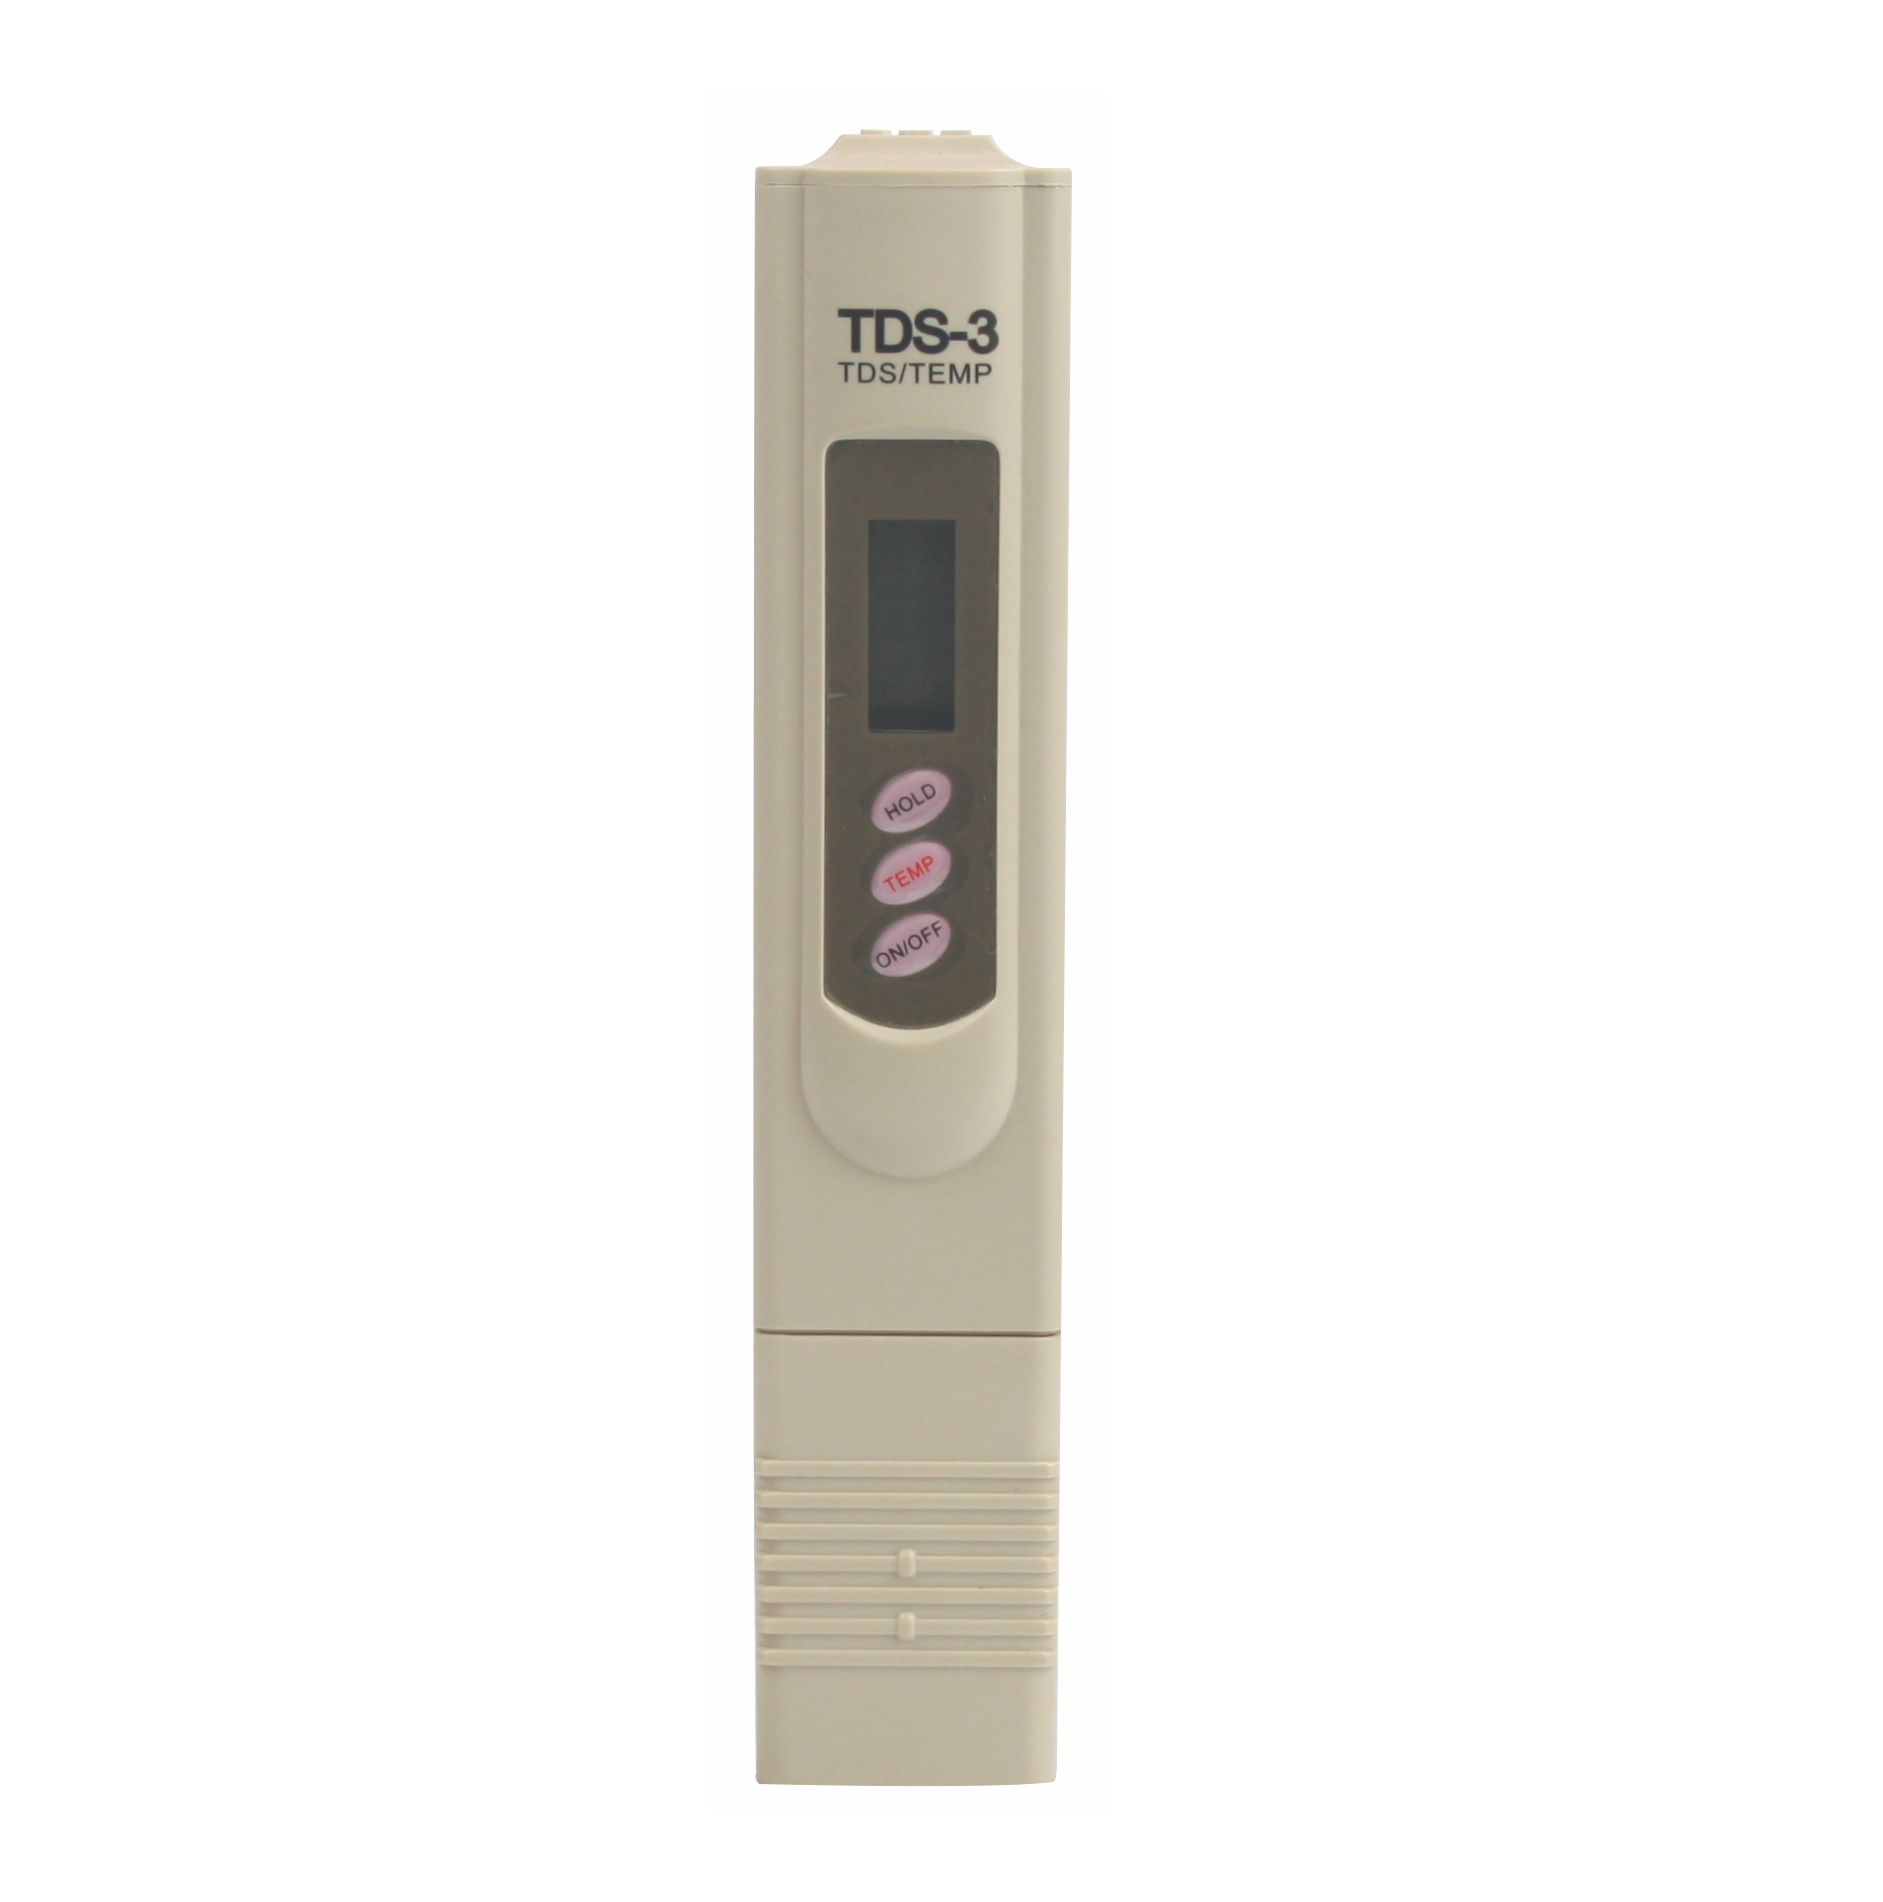 Прибор TDS метр FC-FL-0139 для измерения качества воды